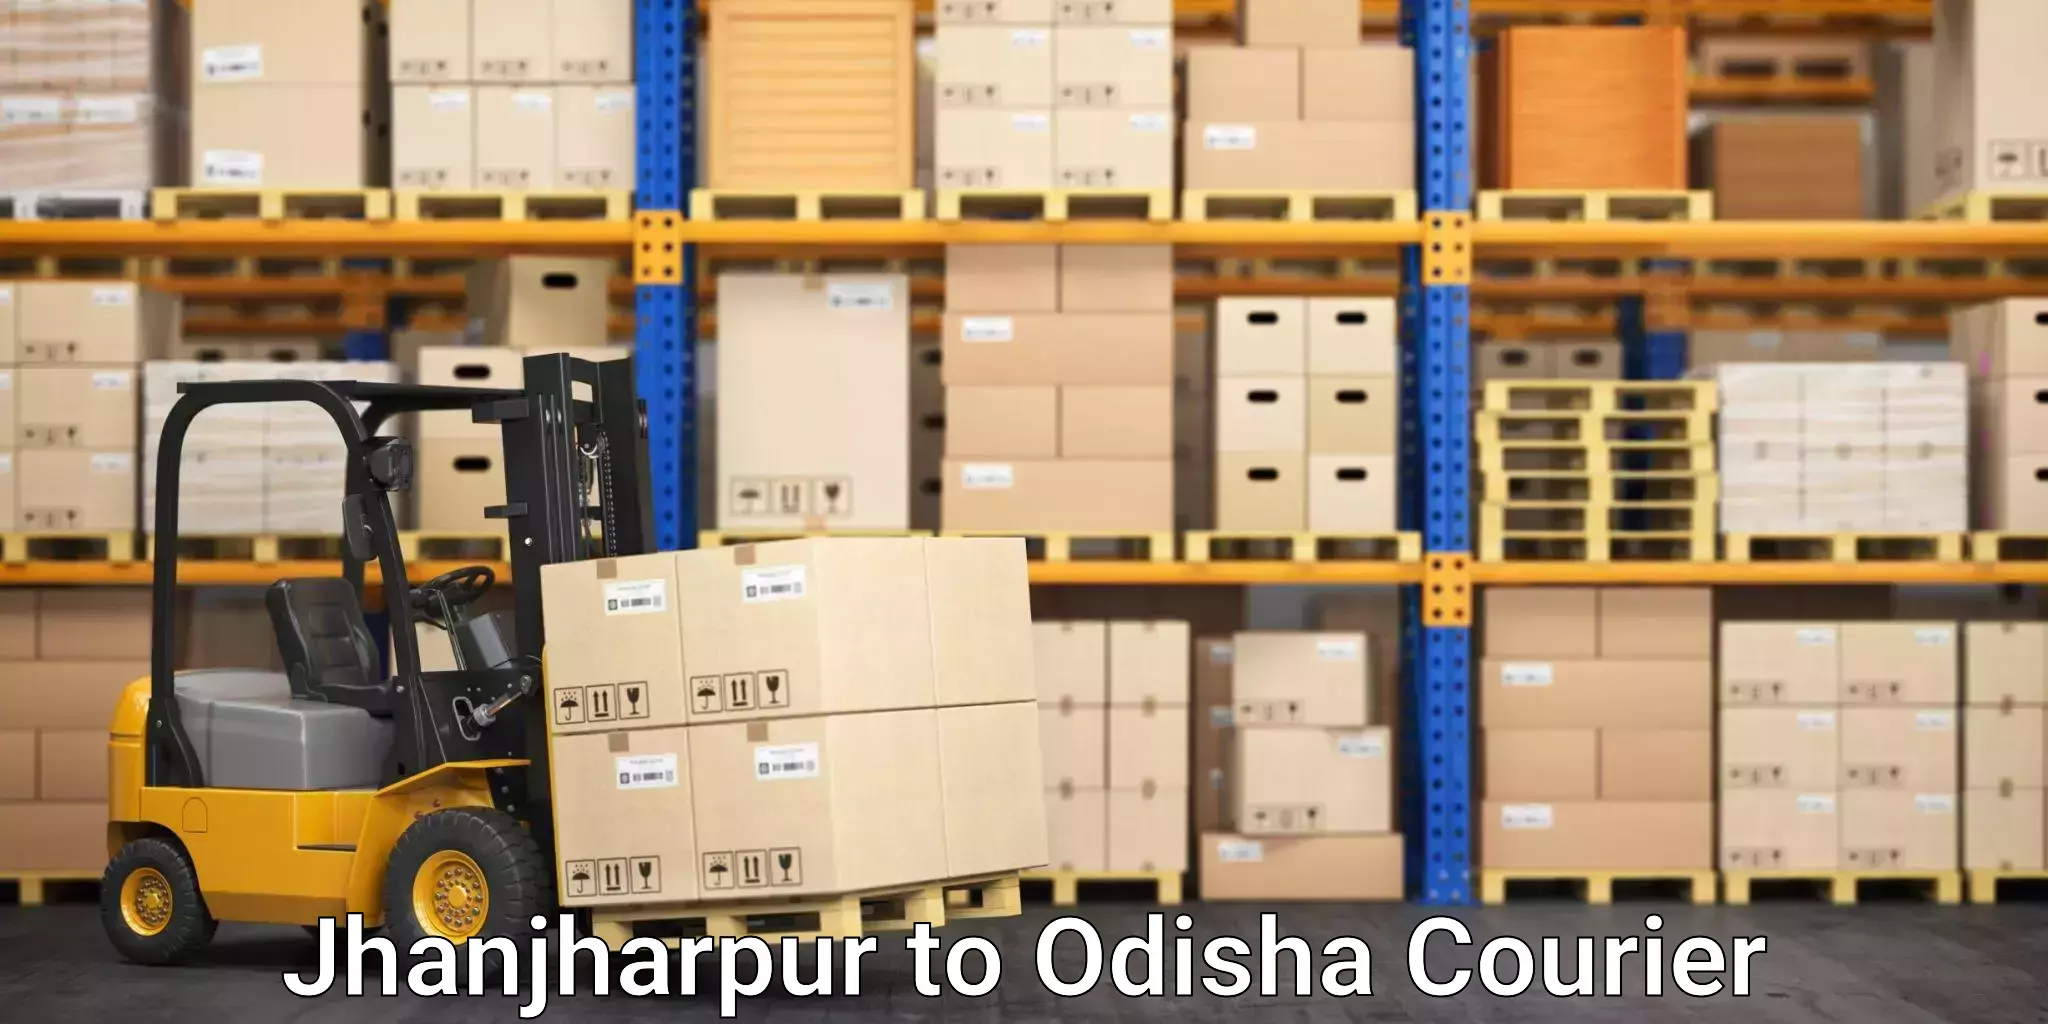 Professional moving company Jhanjharpur to Babujang